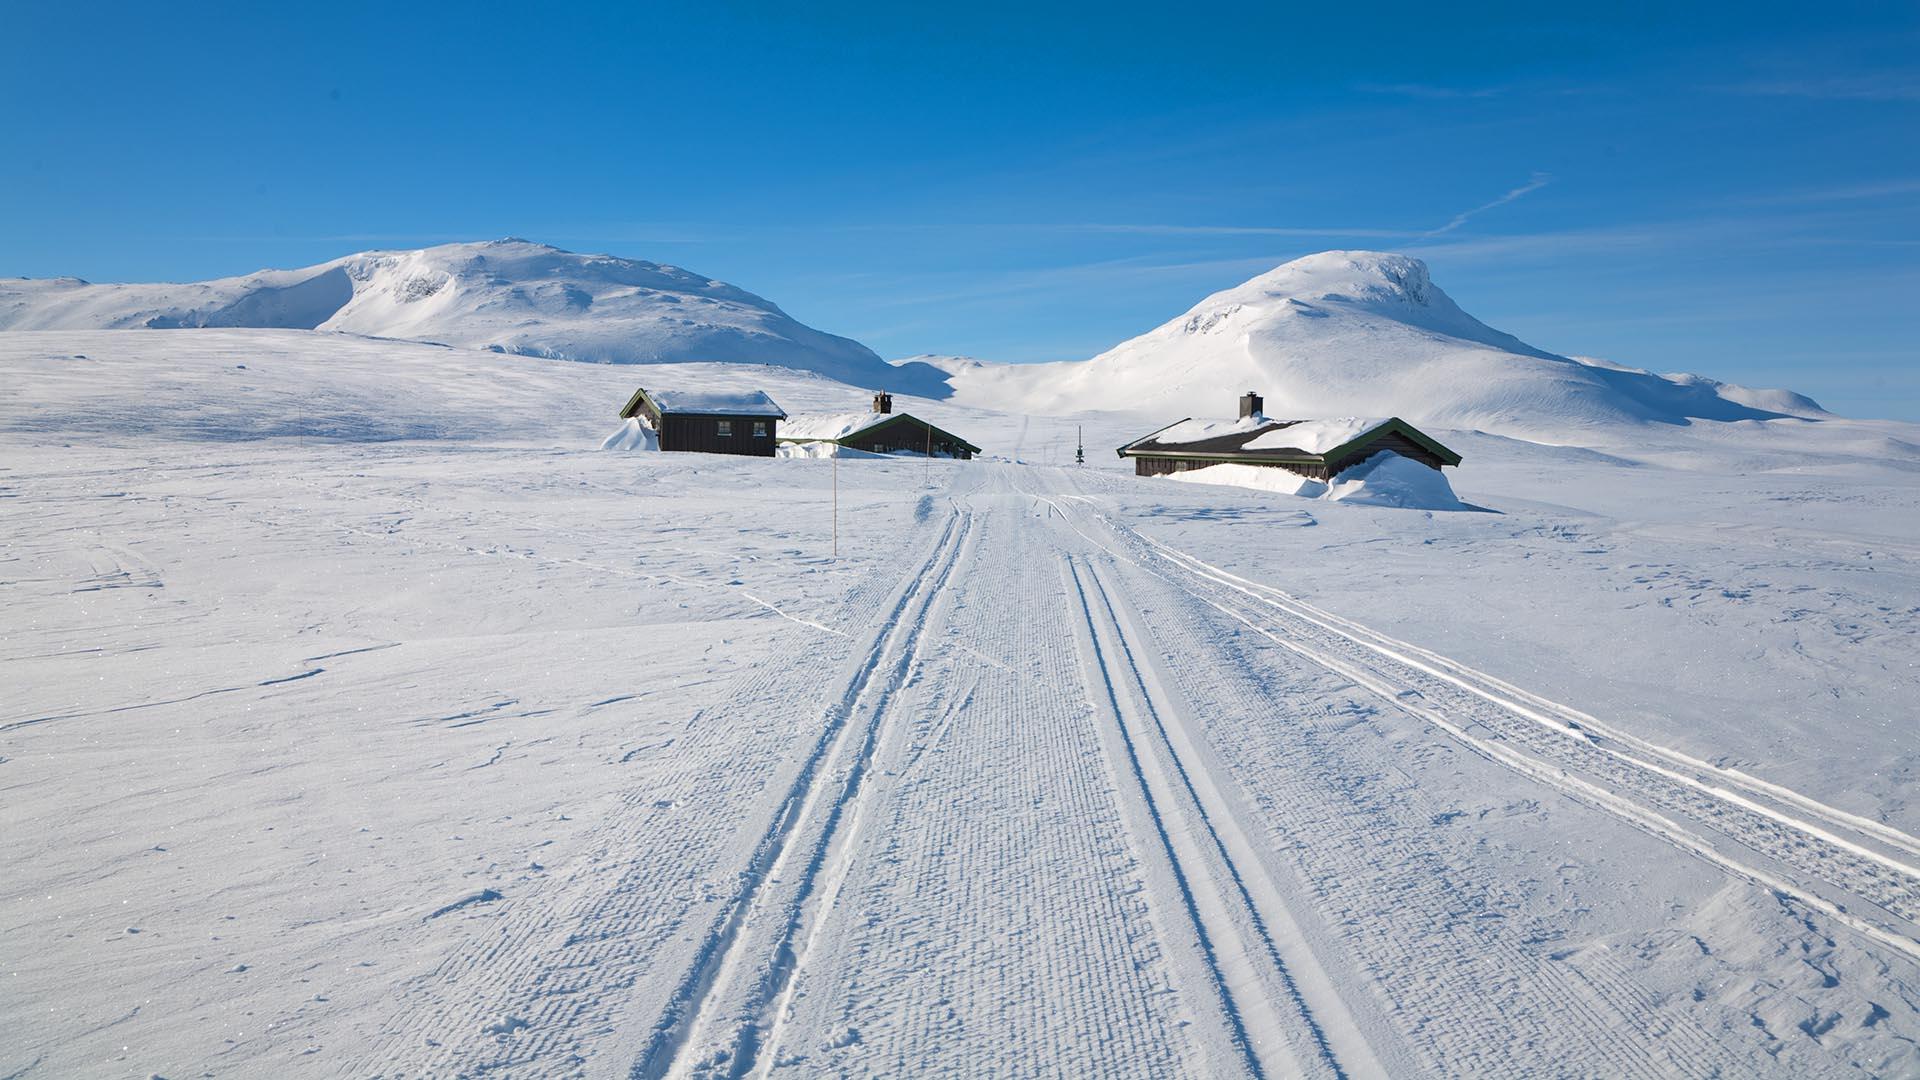 Gespurte Skiloipe direkt bis zu einer Hütte im Winterfjell. Dahinter sieht man zwei Berggipfel.